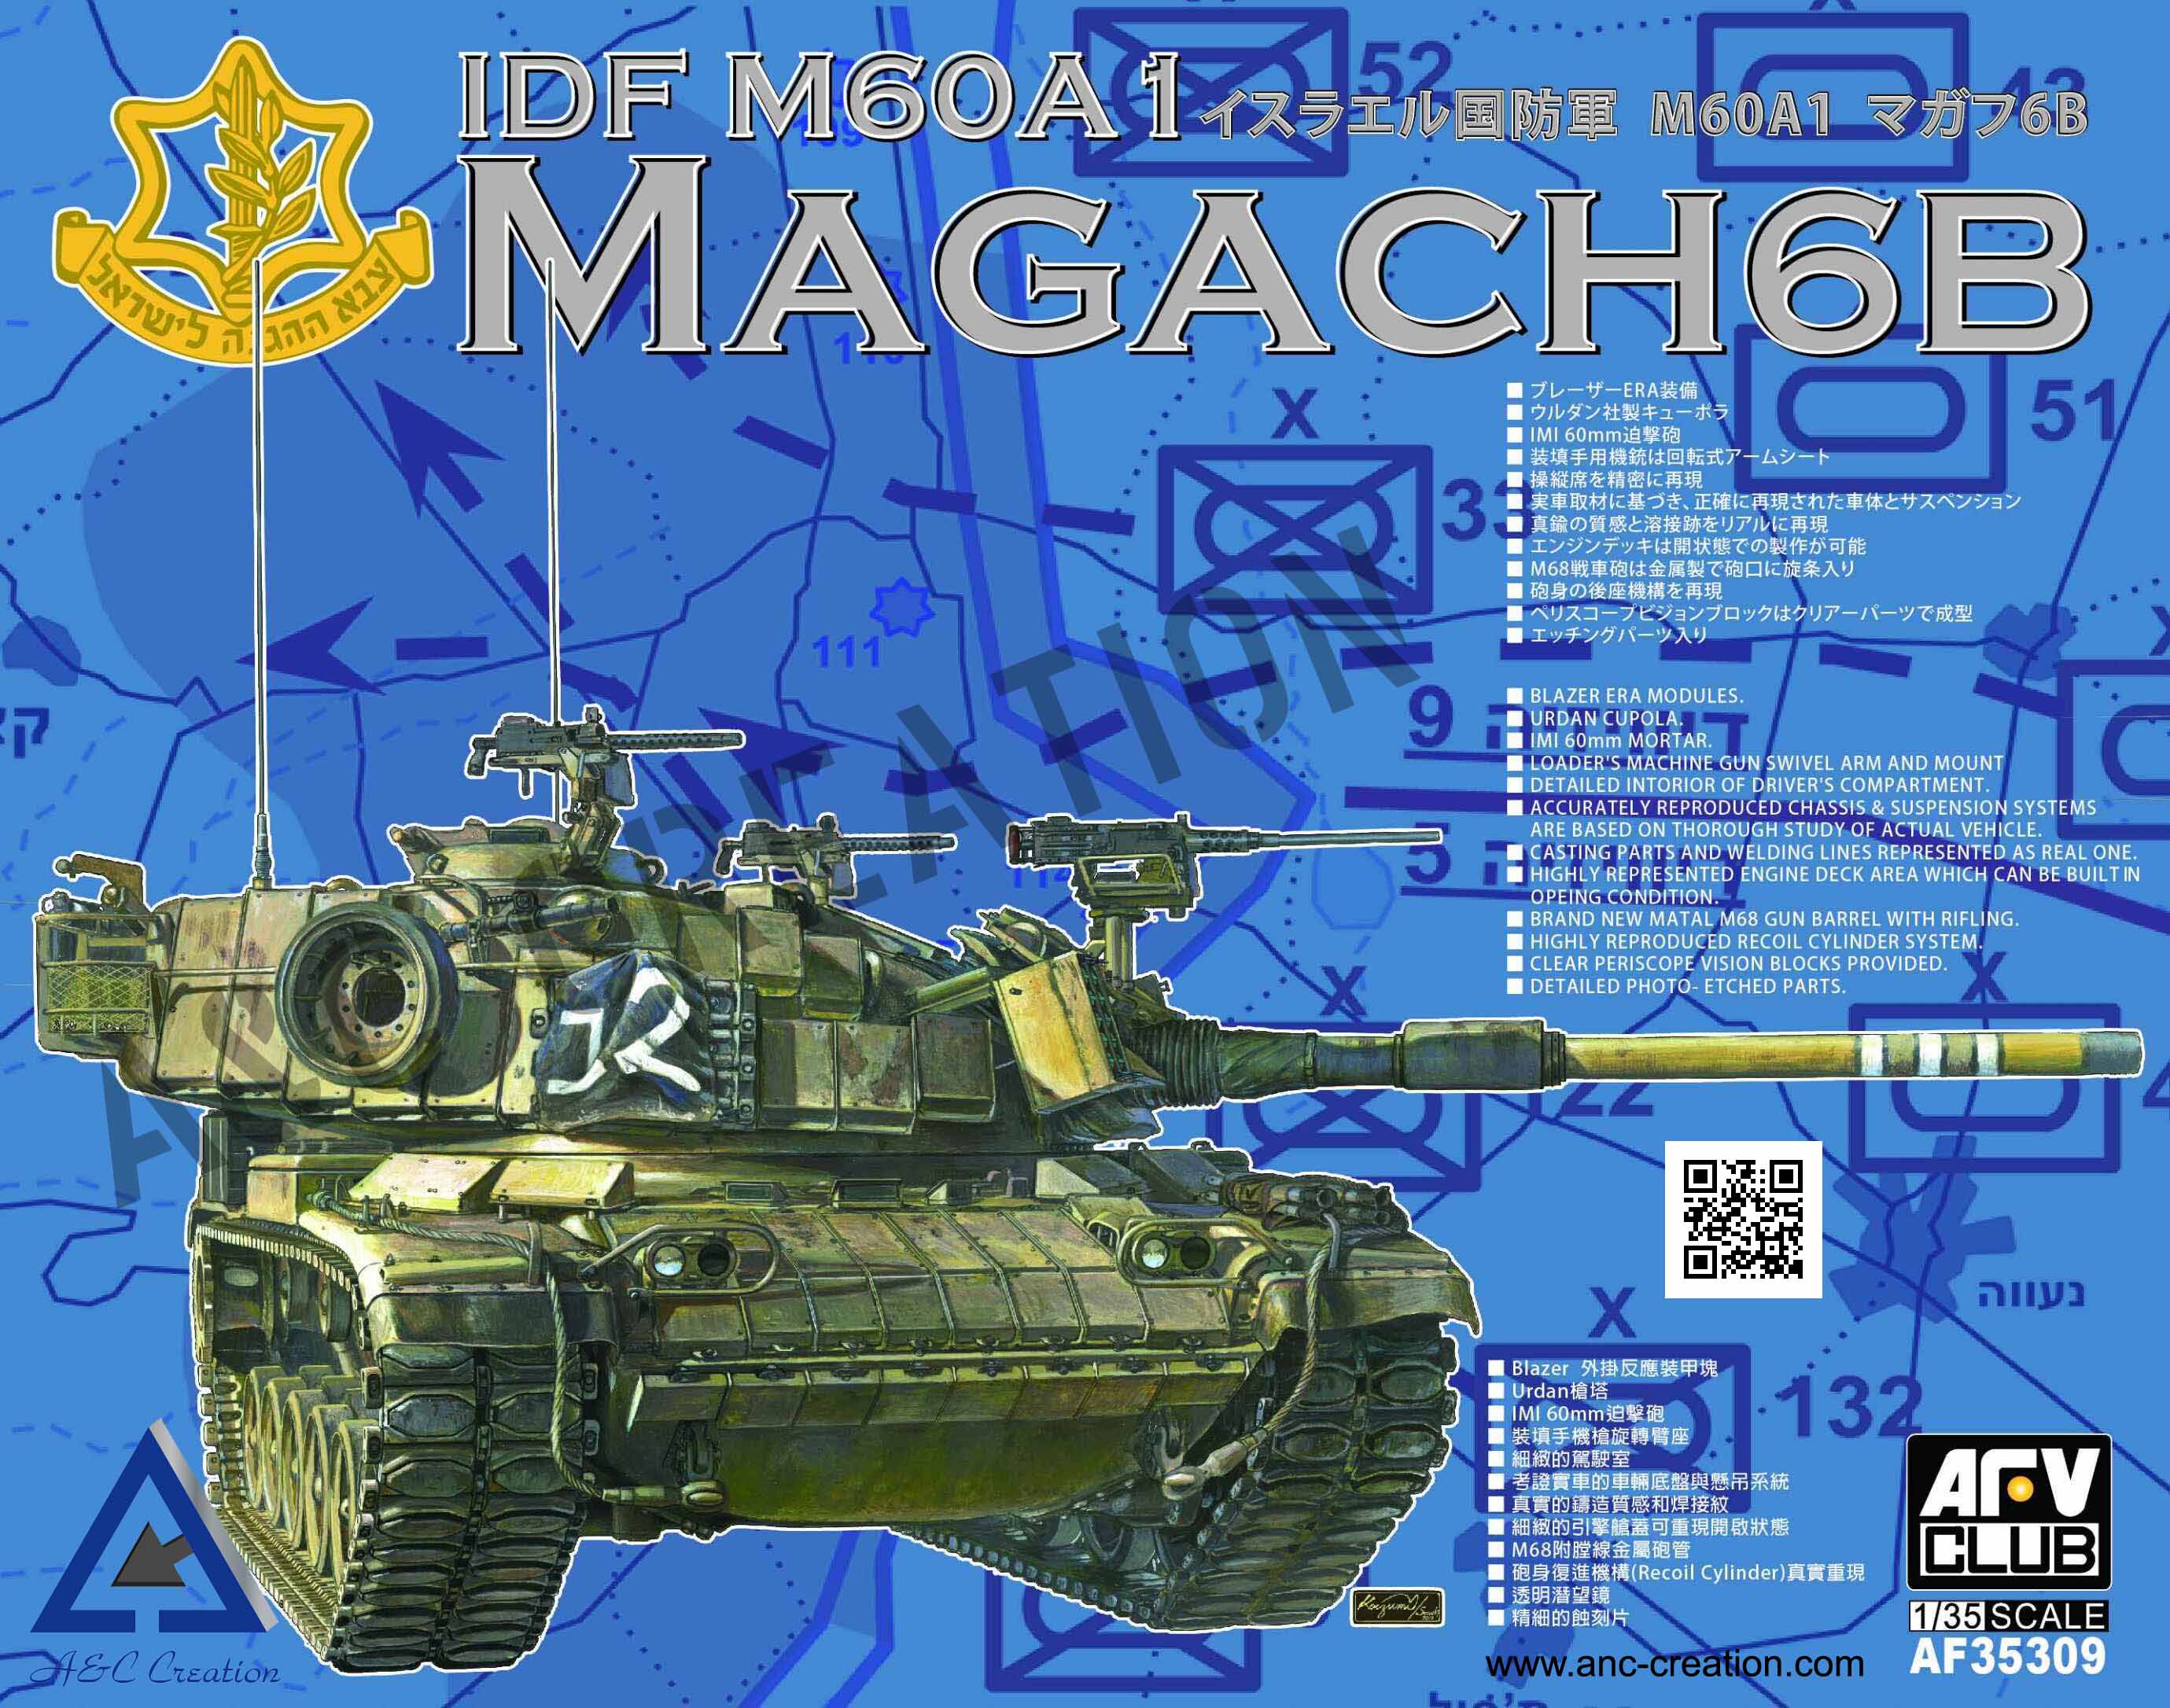 AF35309 IDF M60A1 MAGACH 6B